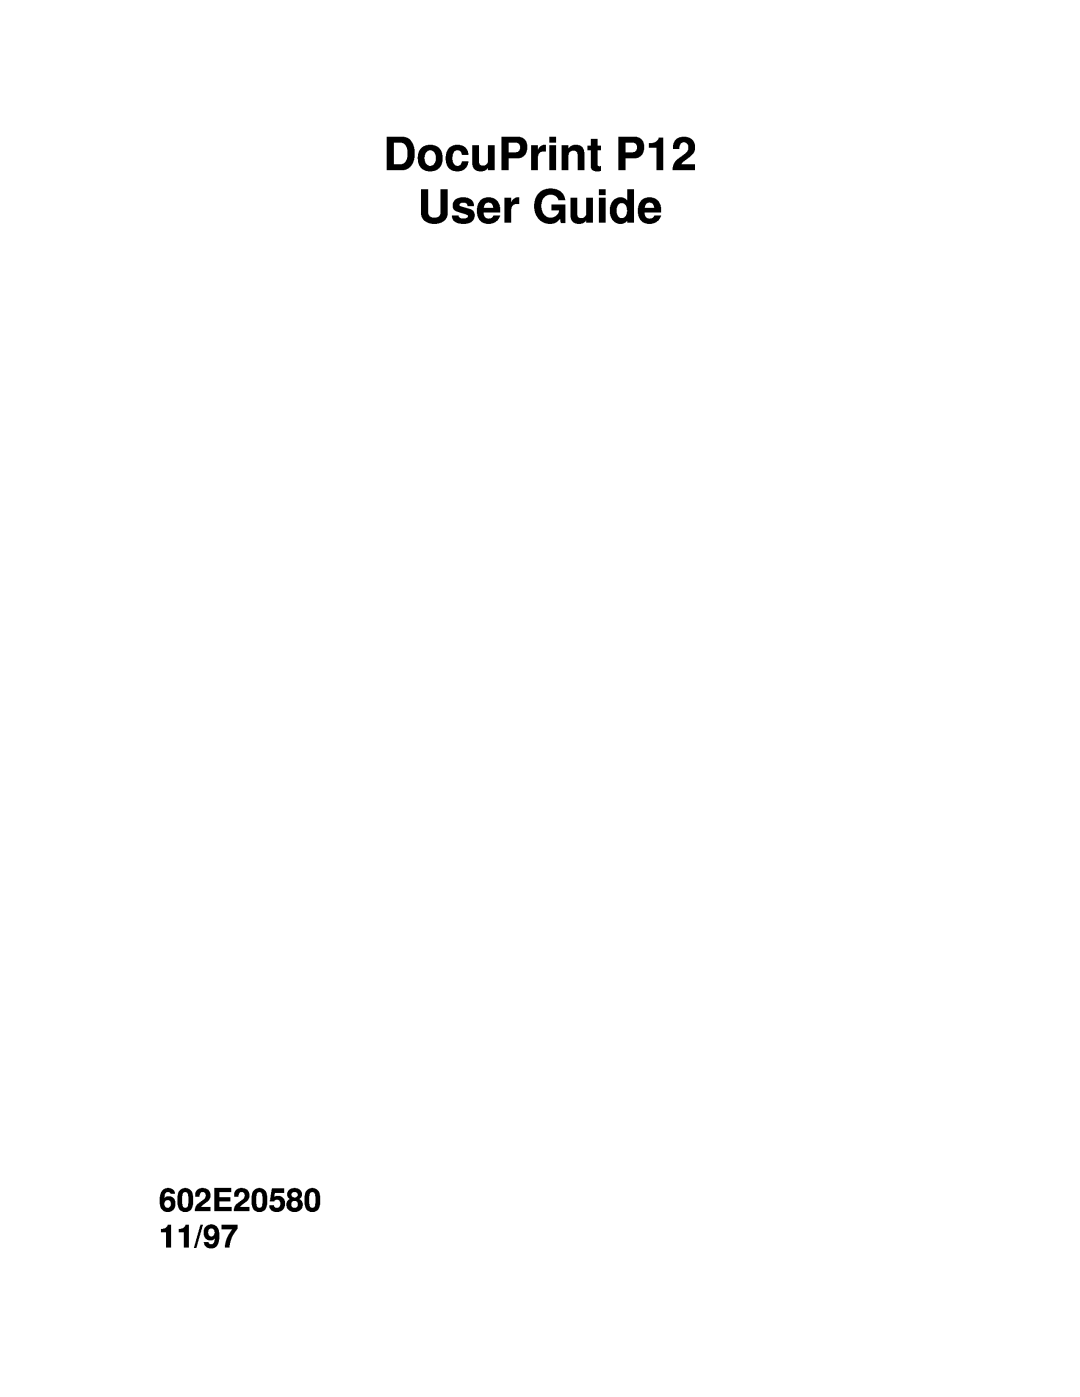 Xerox manual DocuPrint P12 User Guide, 602E20580 11/97 